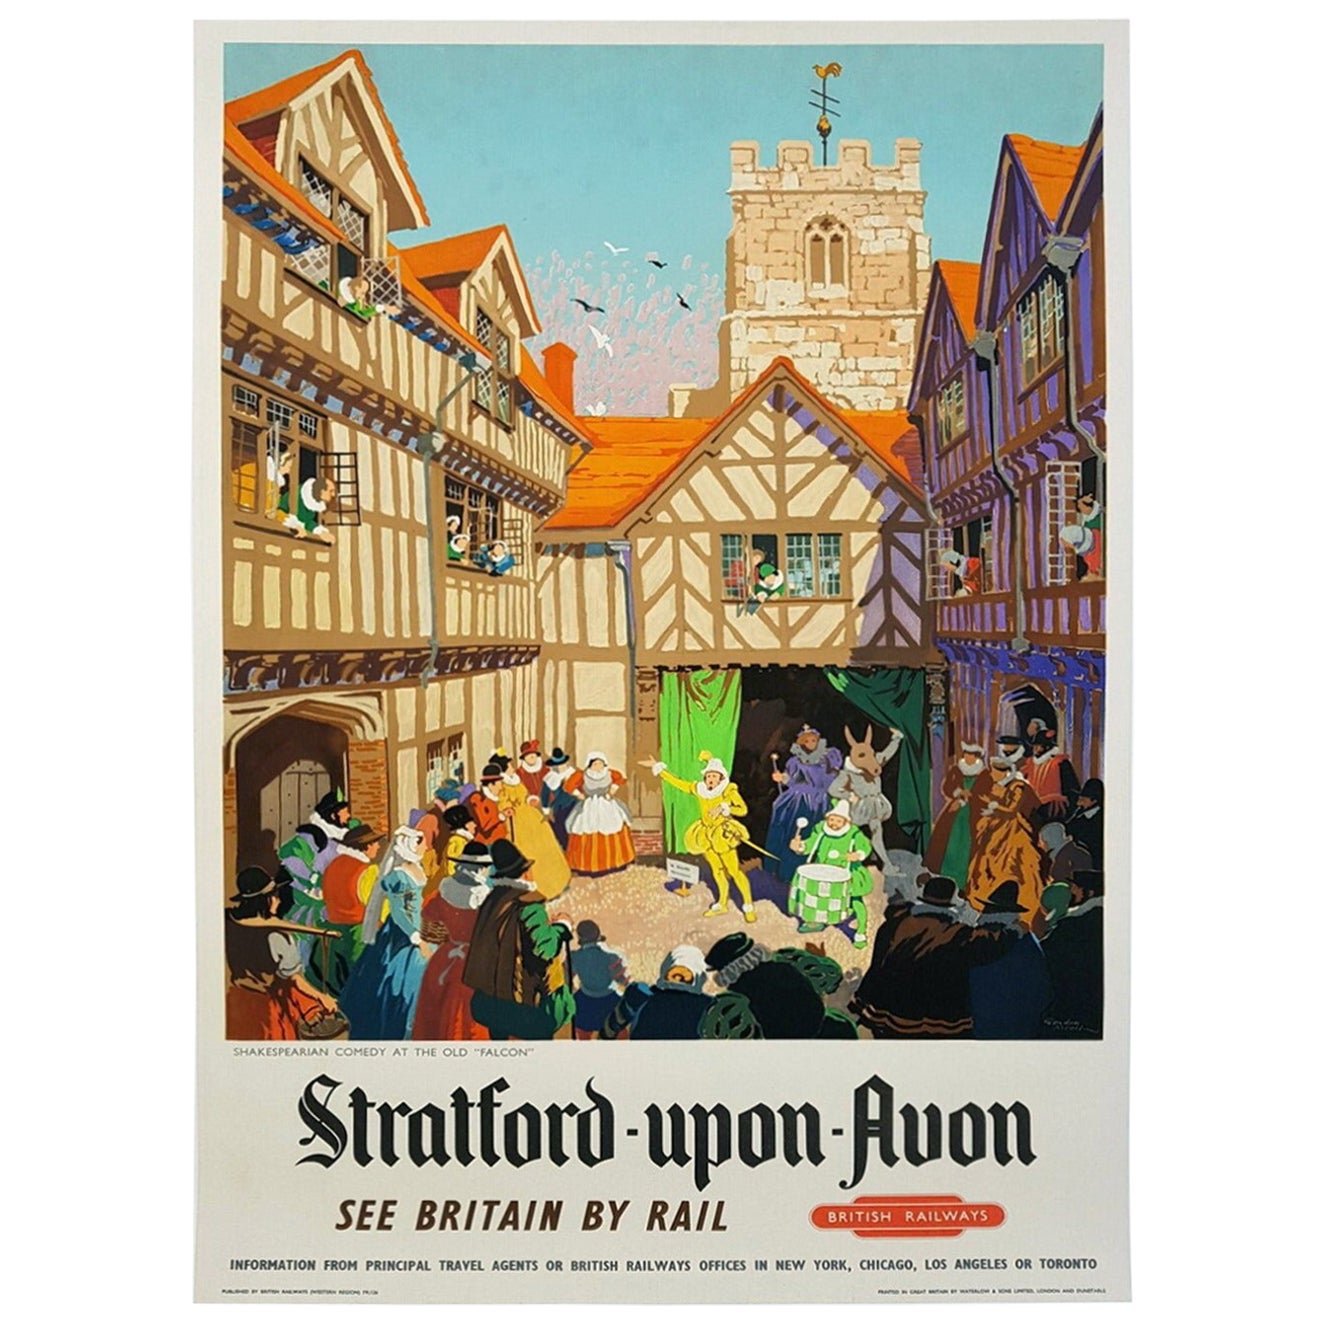 Statford-Upon-Avon - British Railways - Affiche vintage d'origine de 1952